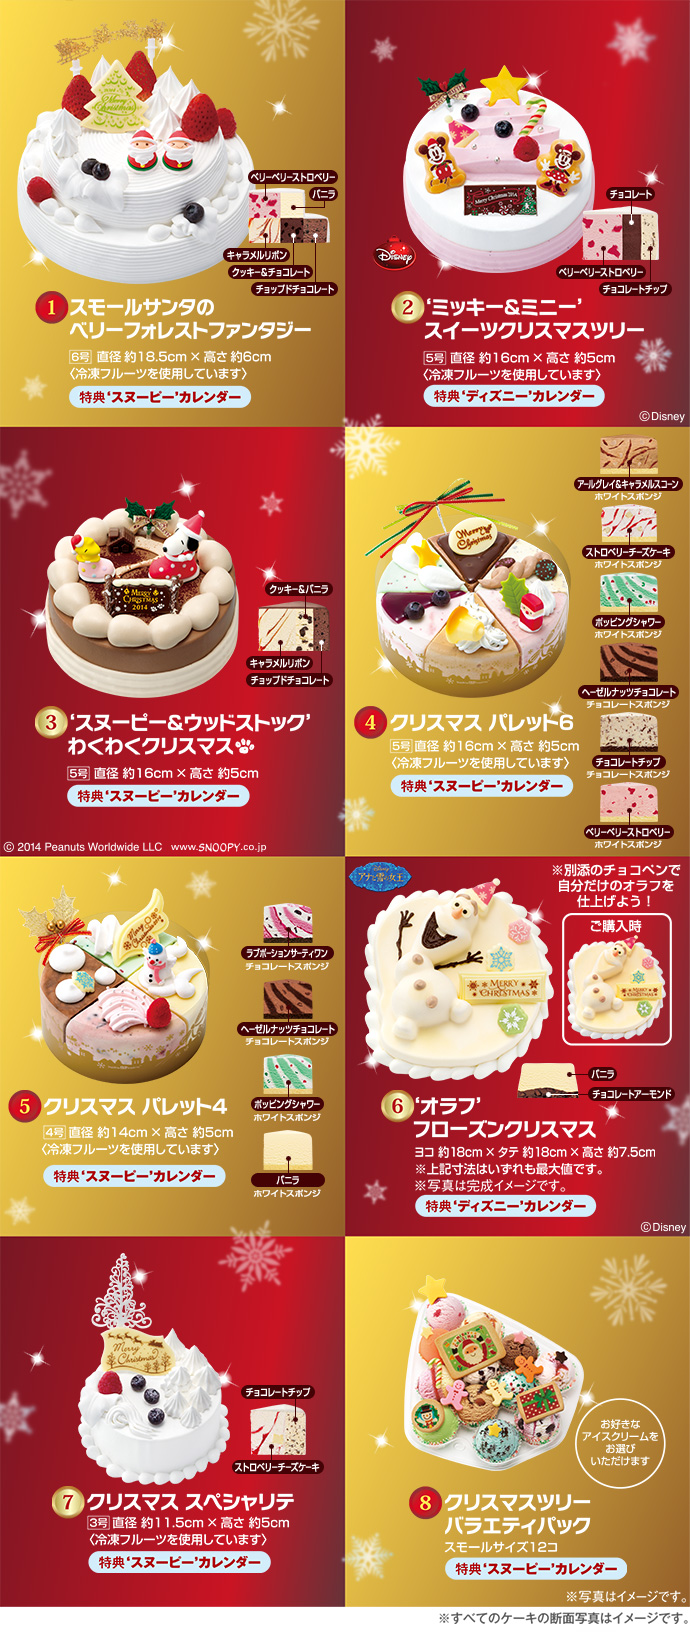 きらきら ブリリアント 欠乏 31 アイス ケーキ 値段 クリスマス Fans Ent Jp